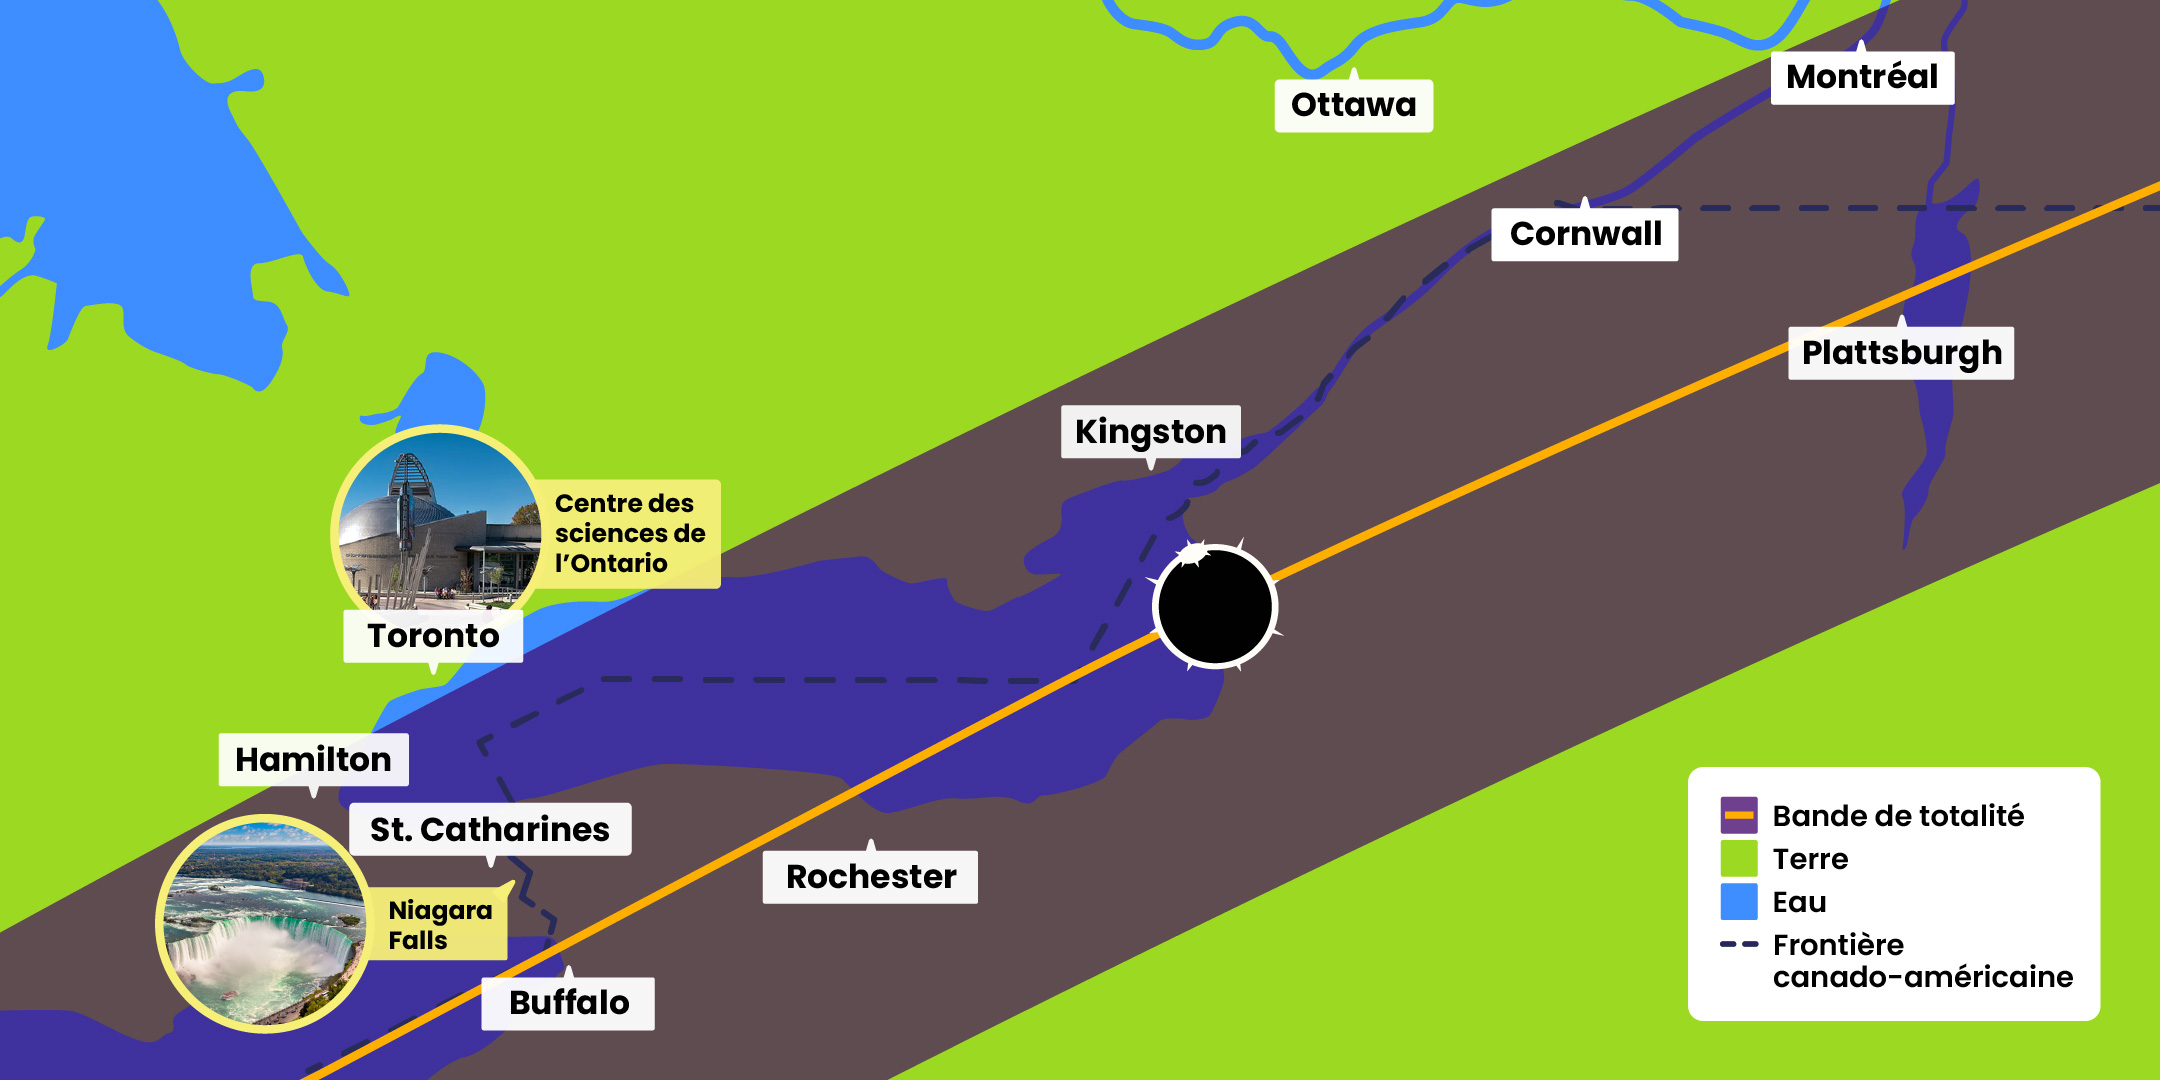 Carte de la bande de totalité de l’éclipse solaire au Canada du 8 avril 2024 montrant les villes incluses dans la trajectoire de l’éclipse totale. Certaines d’entre elles sont Montréal, Cornwall, Kingston, Hamilton, St. Catharines et Niagara Falls. Toronto (incluant le Centre des sciences de l’Ontario) se situe dans la zone de pénombre.